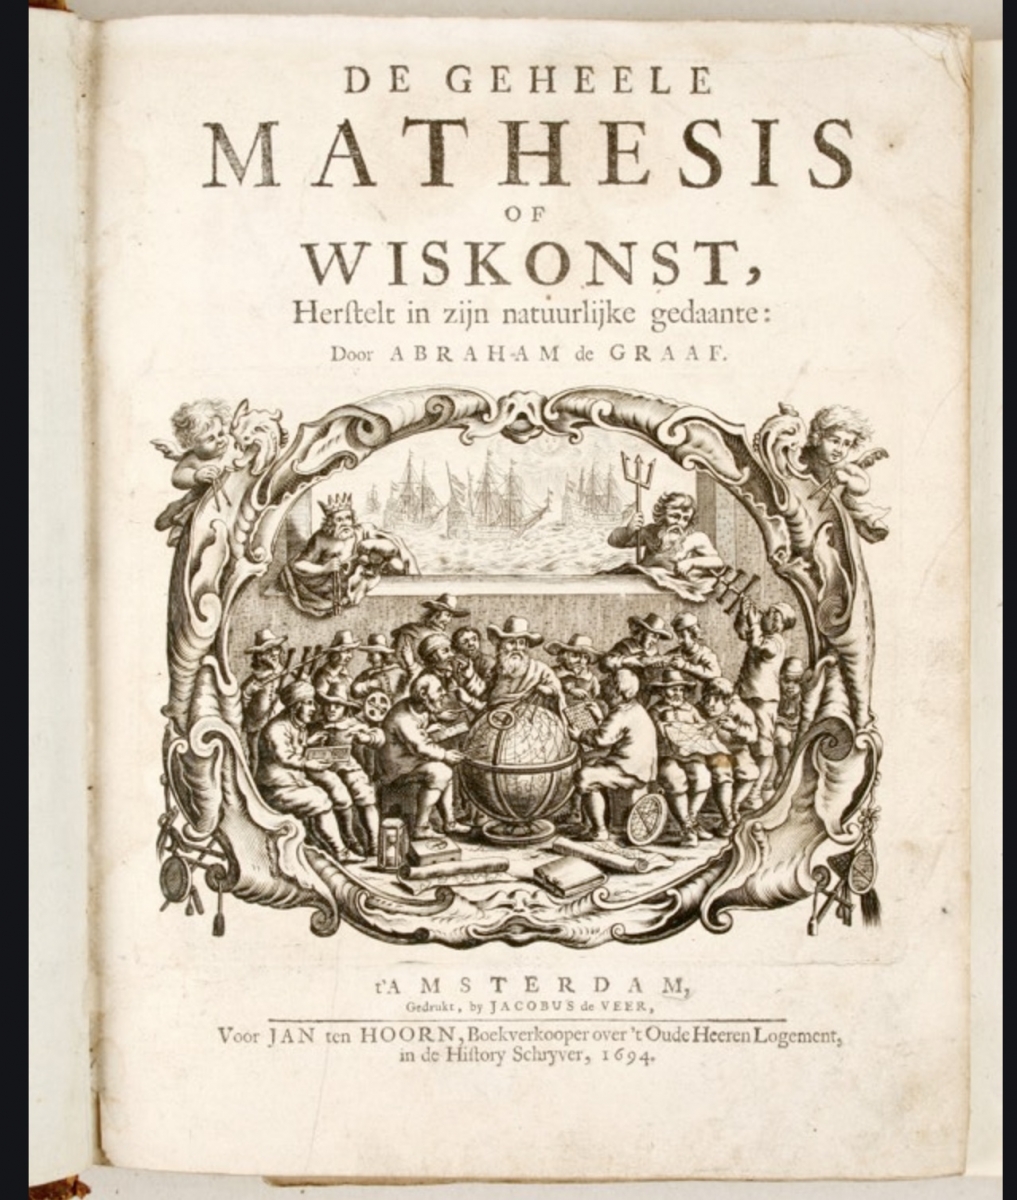 Title page from 1694 printing of De geheele mathesis of wiskunst, herstelt in zijn natuurlijke gedaante.